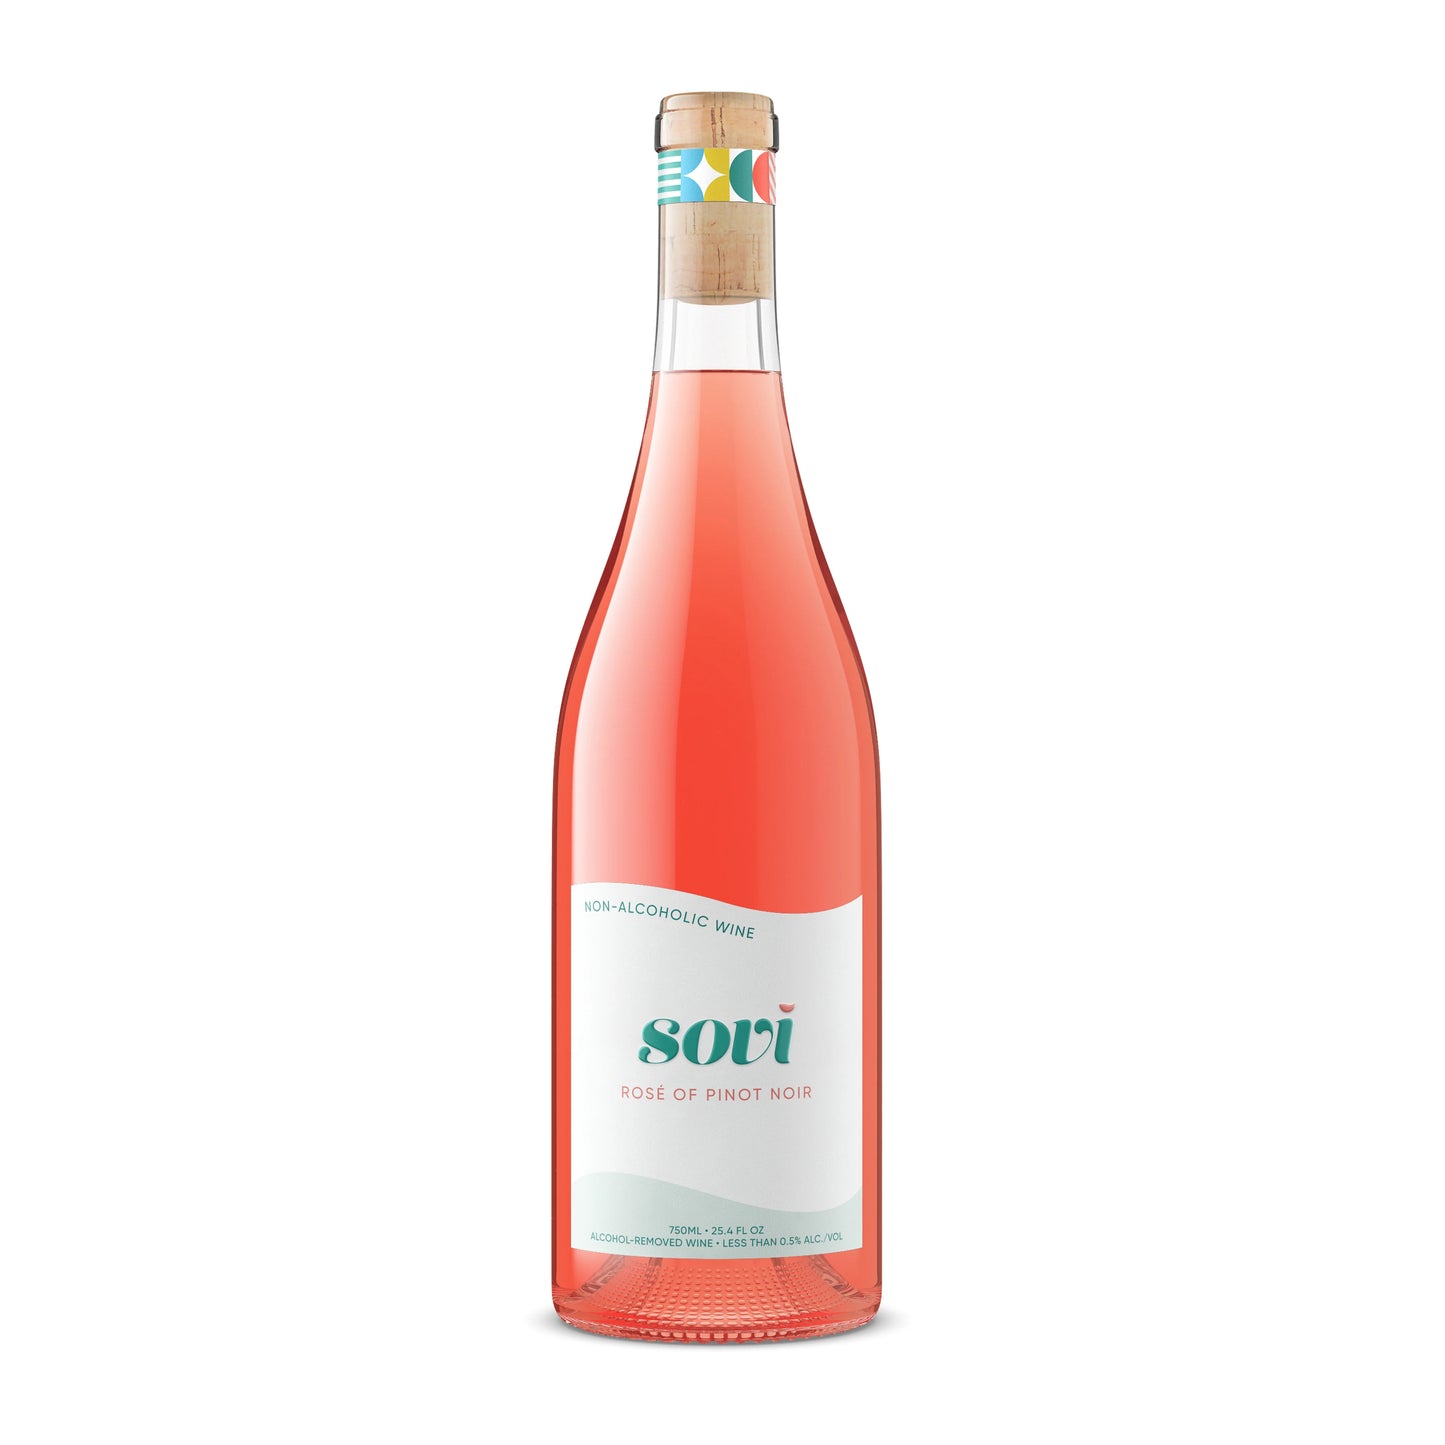 Sovi - Rose of Pinot Noir